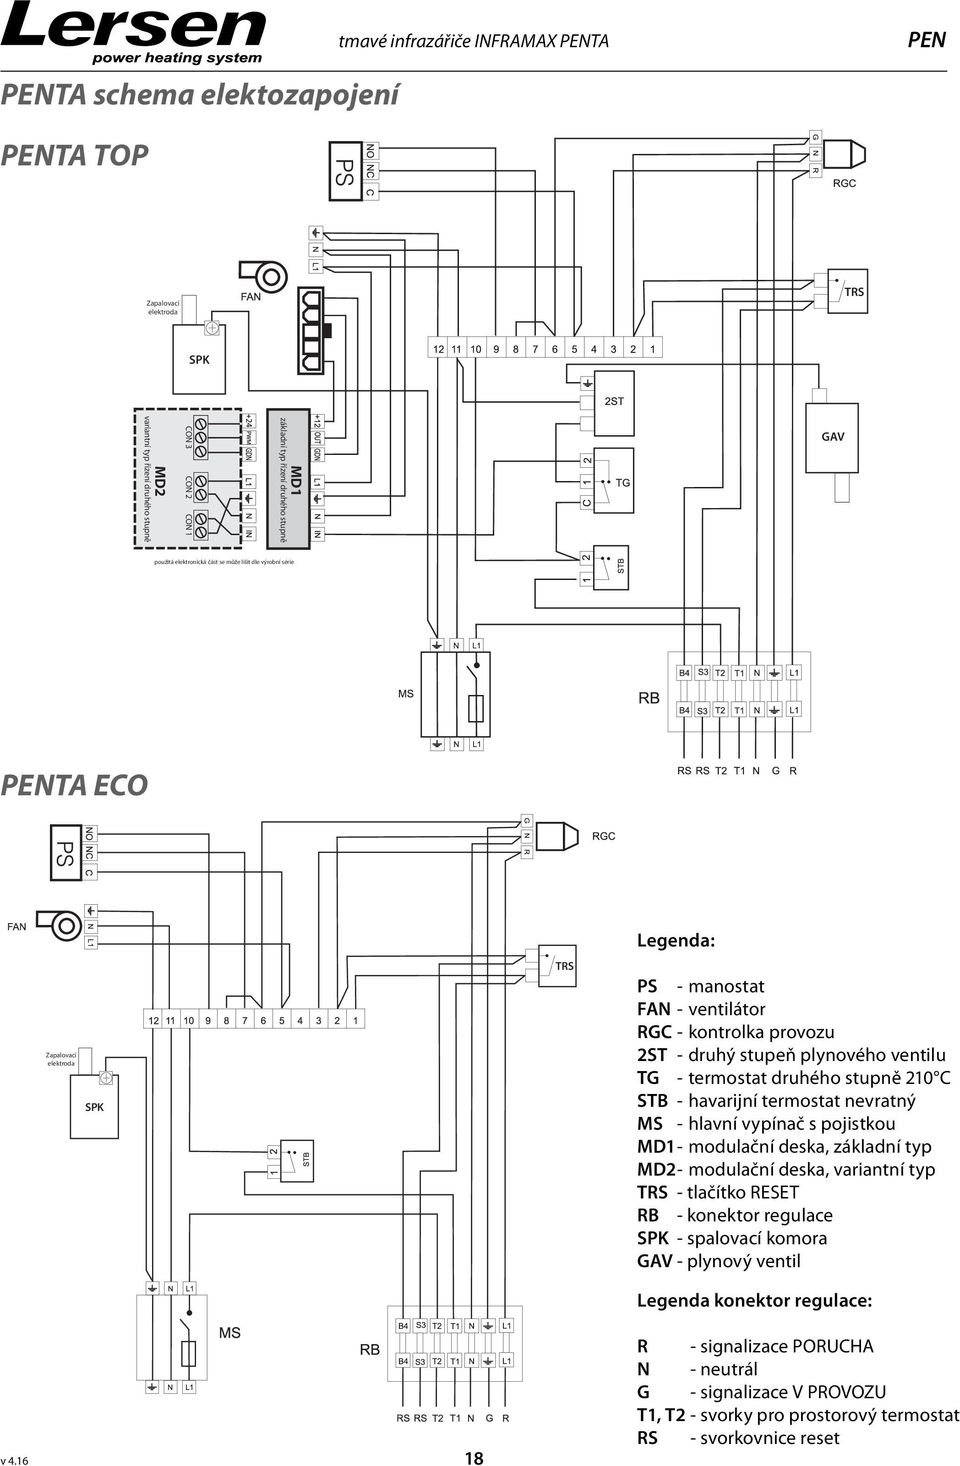 plynového ventilu TG - termostat druhého stupně 210 C STB - havarijní termostat nevratný MS - hlavní vypínač s pojistkou MD1 - modulační deska, základní typ MD2 - modulační deska, variantní typ TRS -